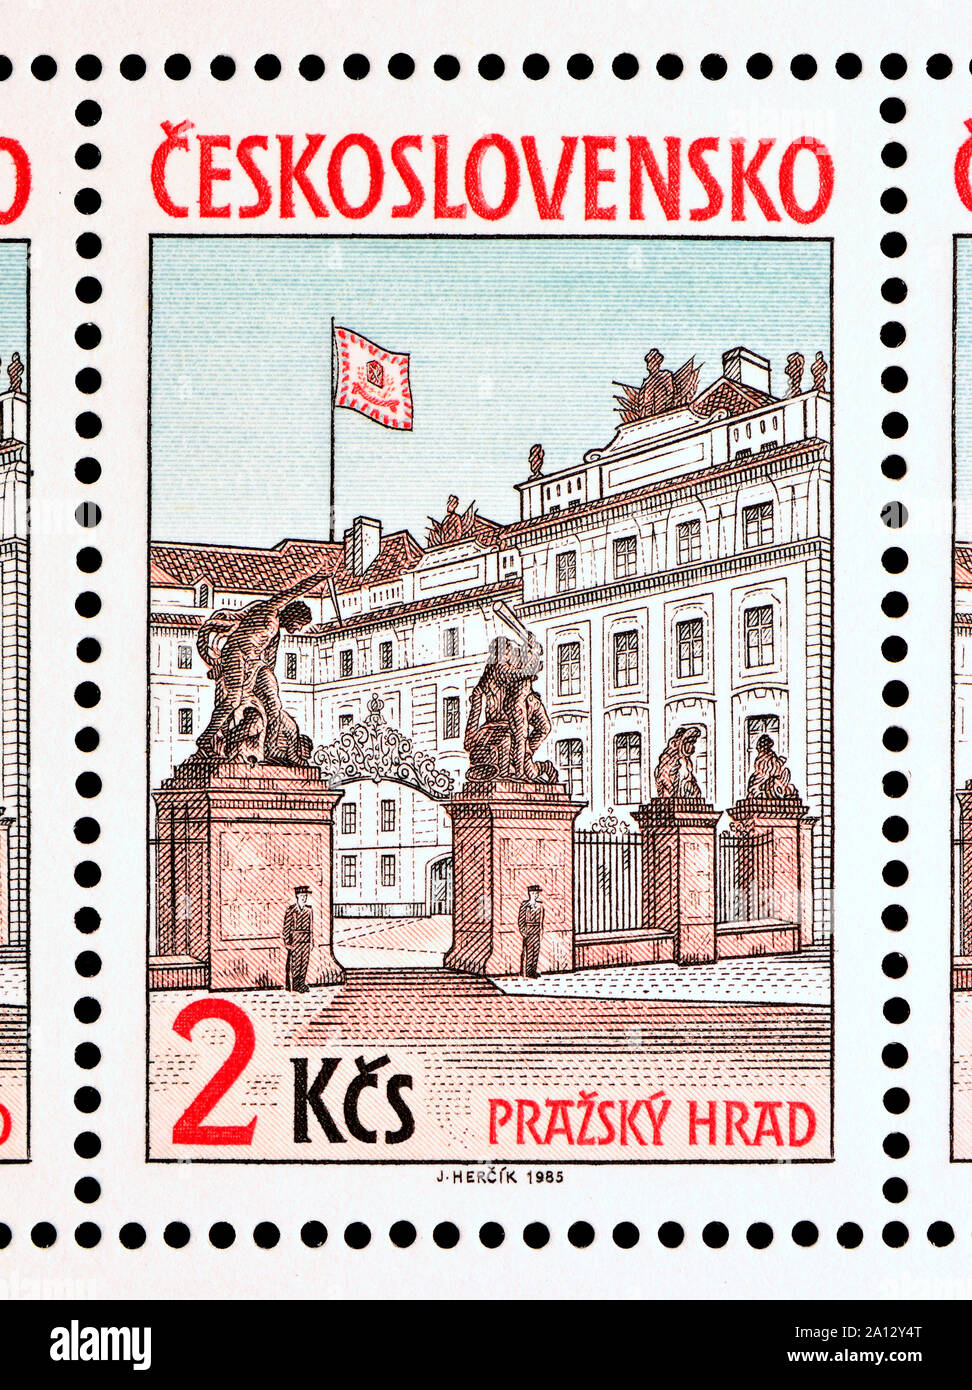 Timbre tchécoslovaque (1985) : Vue sur le château de Prague / Prazsky Hrad. Banque D'Images